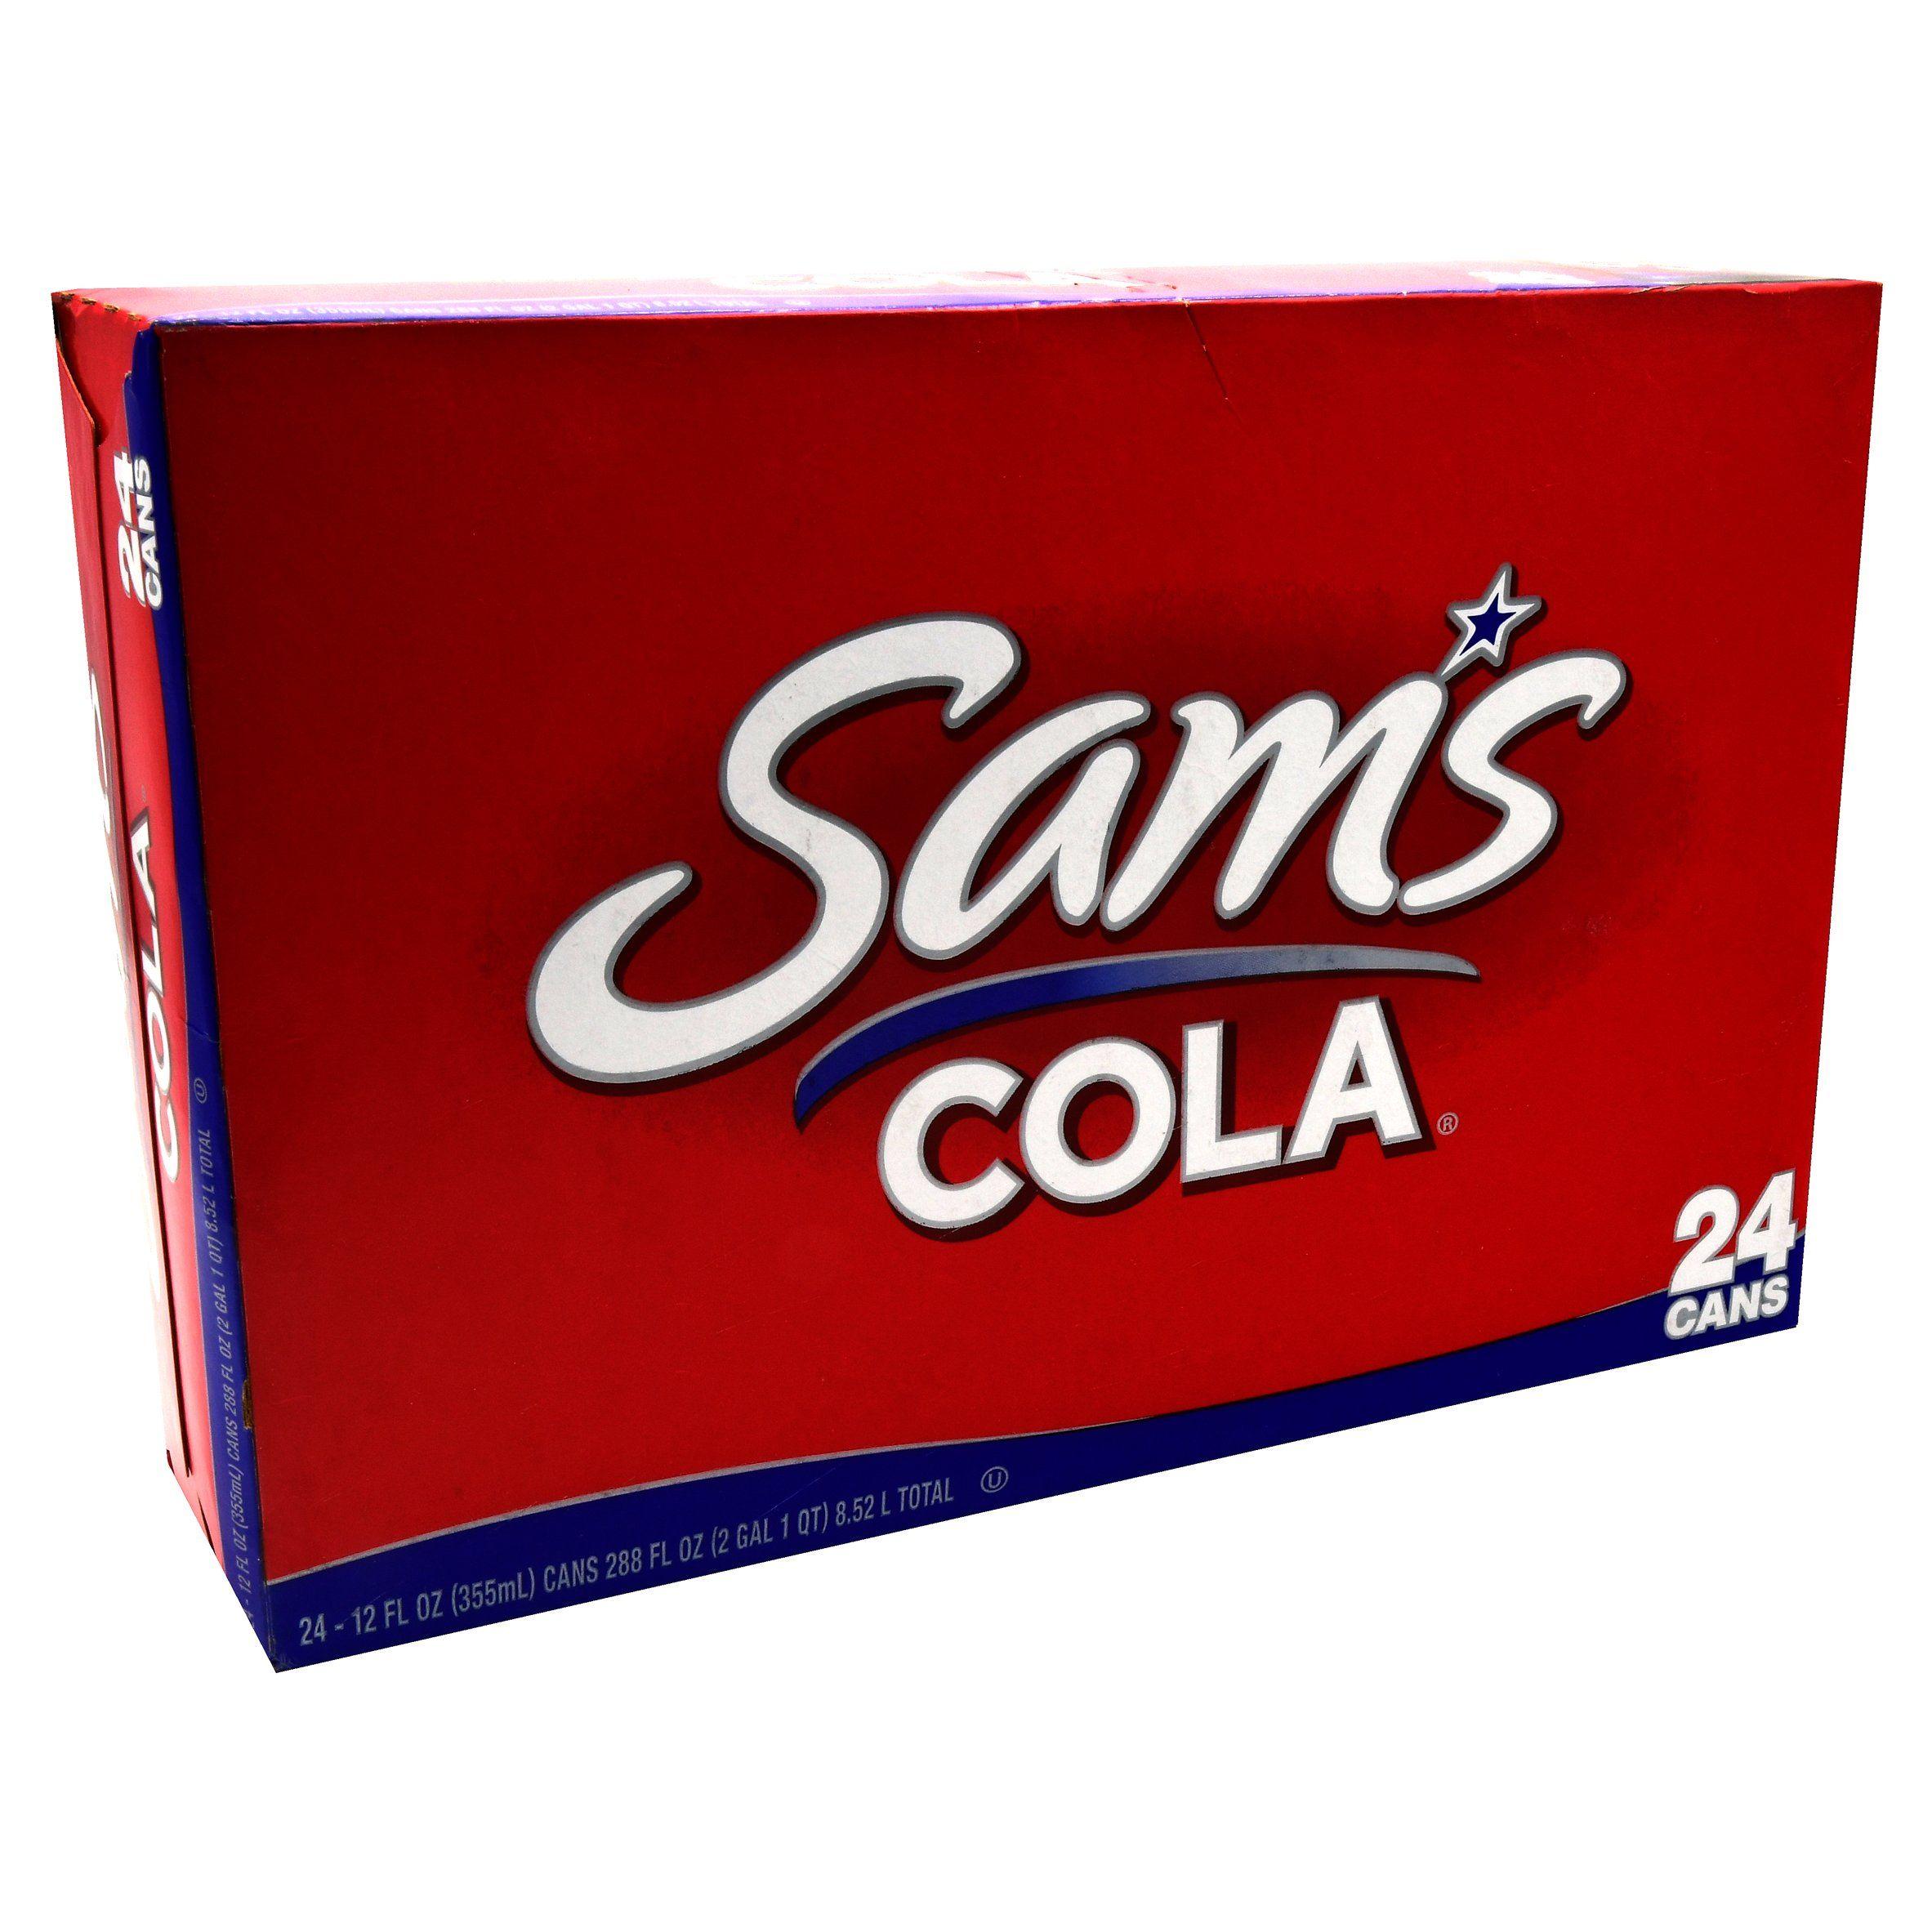 Sam's Choice Cola Logo - Sam's Choice Sam's Cola, 12 Fl. Oz., 24 Count - Walmart.com